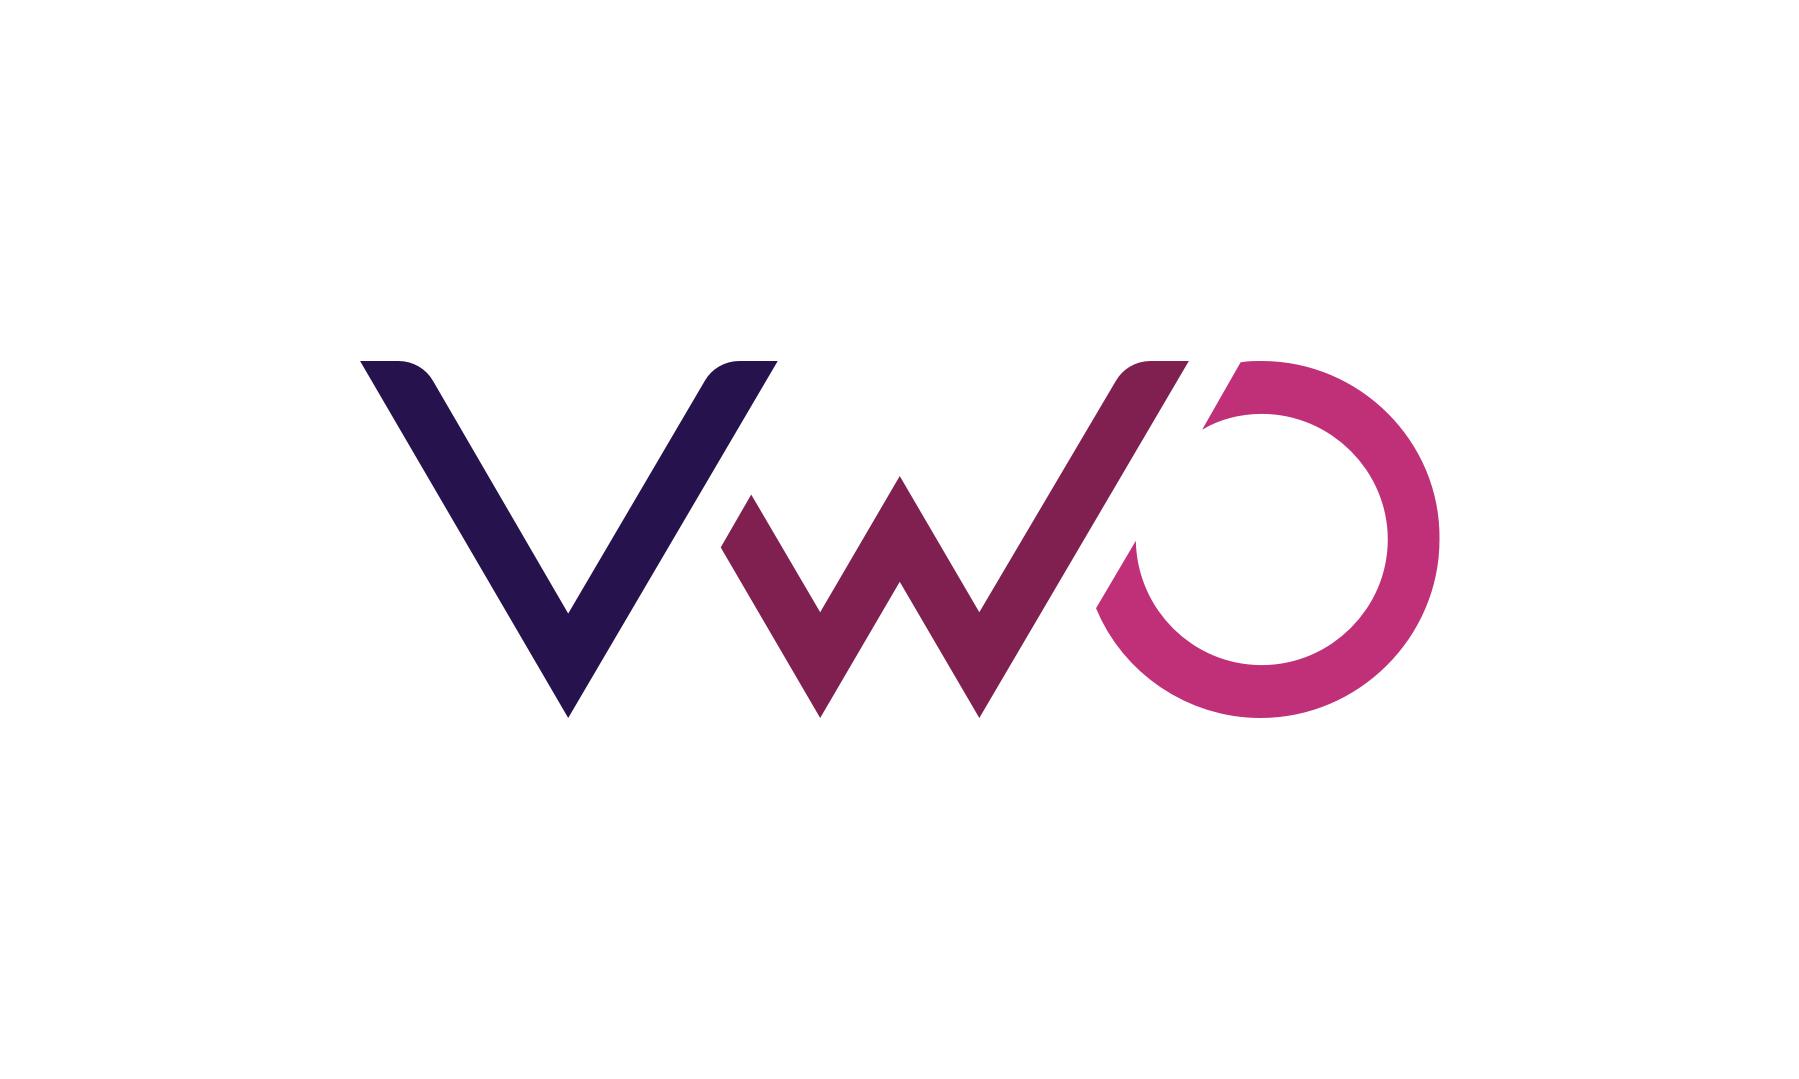 VWO logo